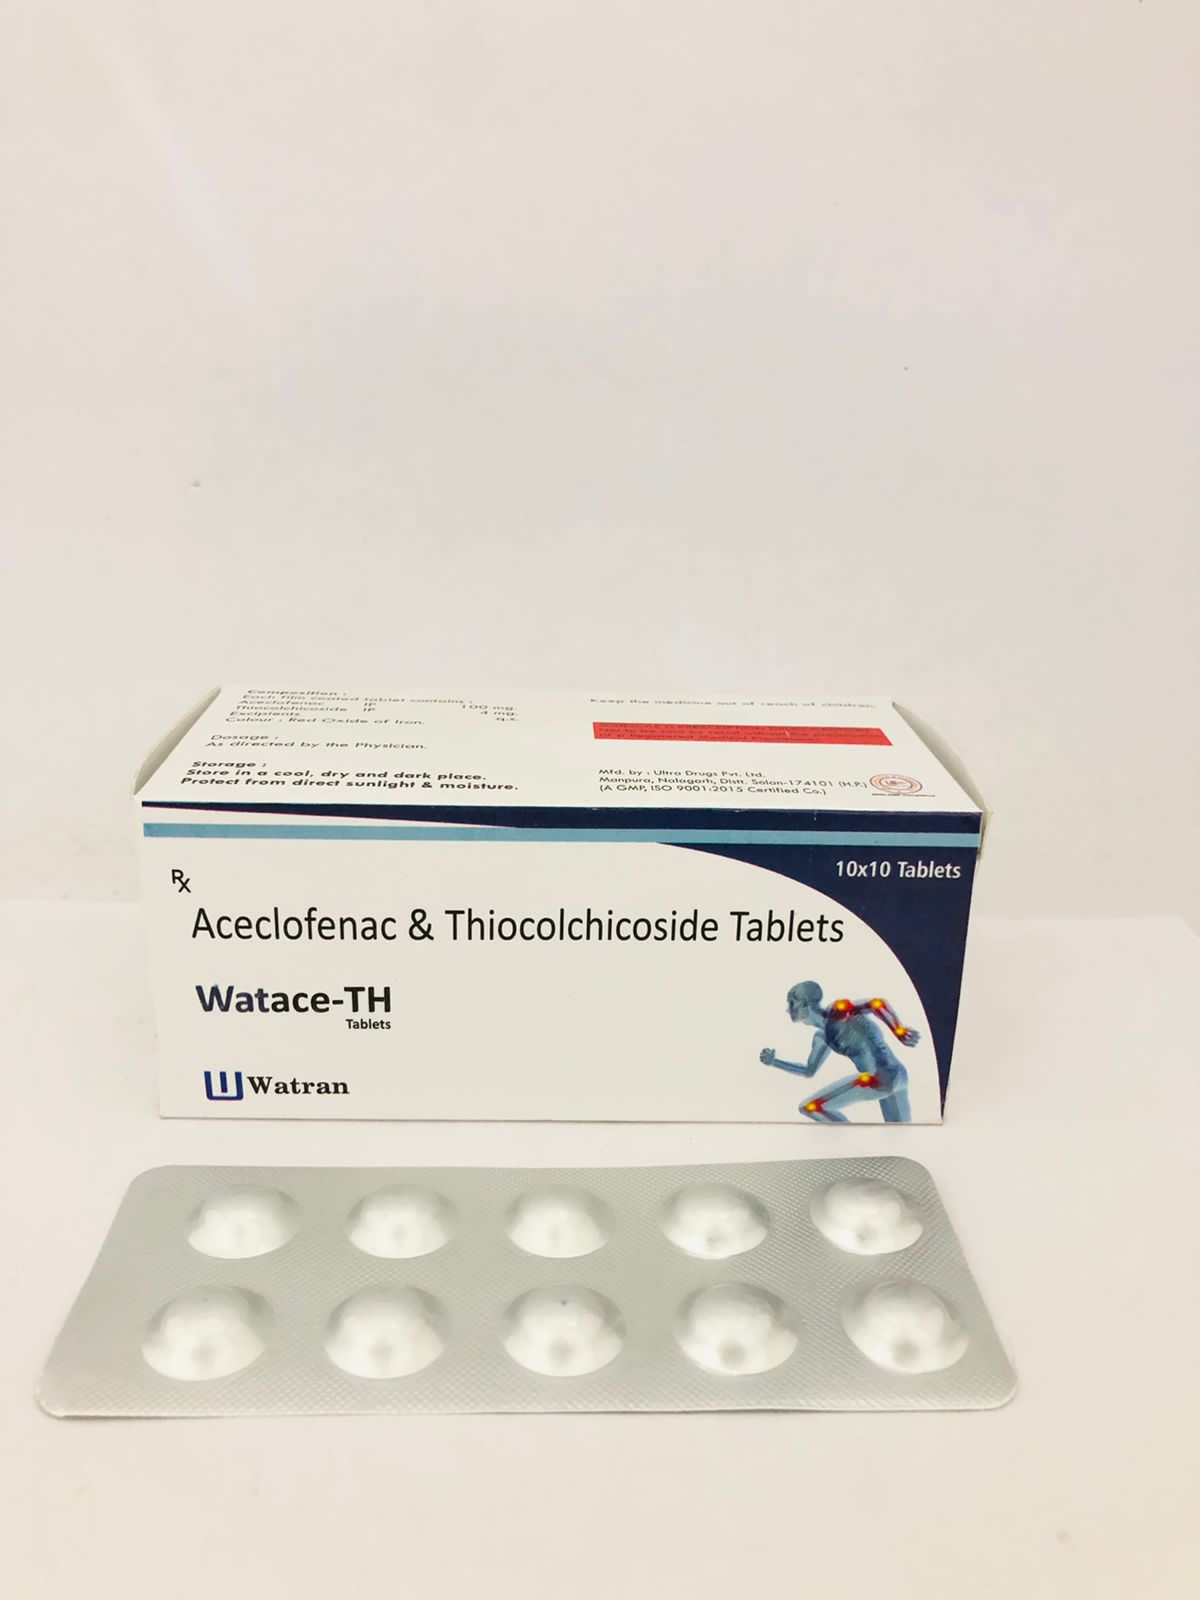 Aceclofenac 100 mg + Thiocholchicoside 4 mg